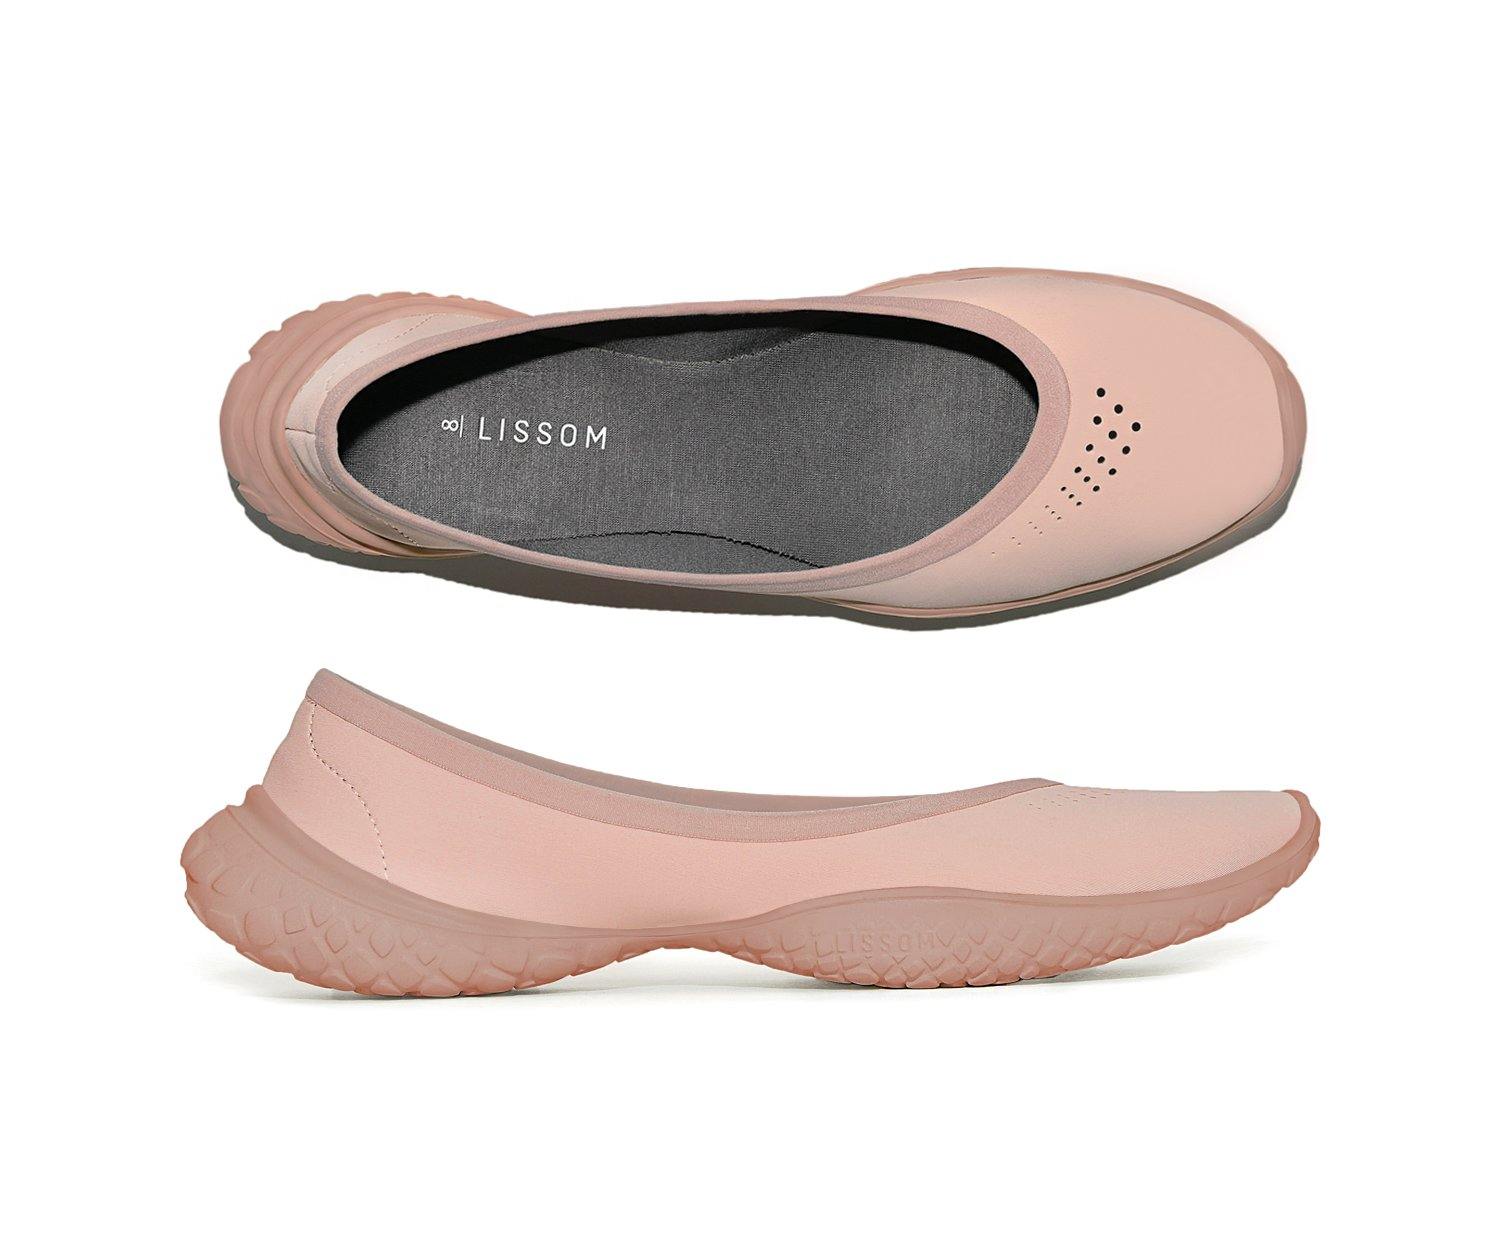 LISSOM Flyte Blush Slip-On Comfort Ballet Flats for Women